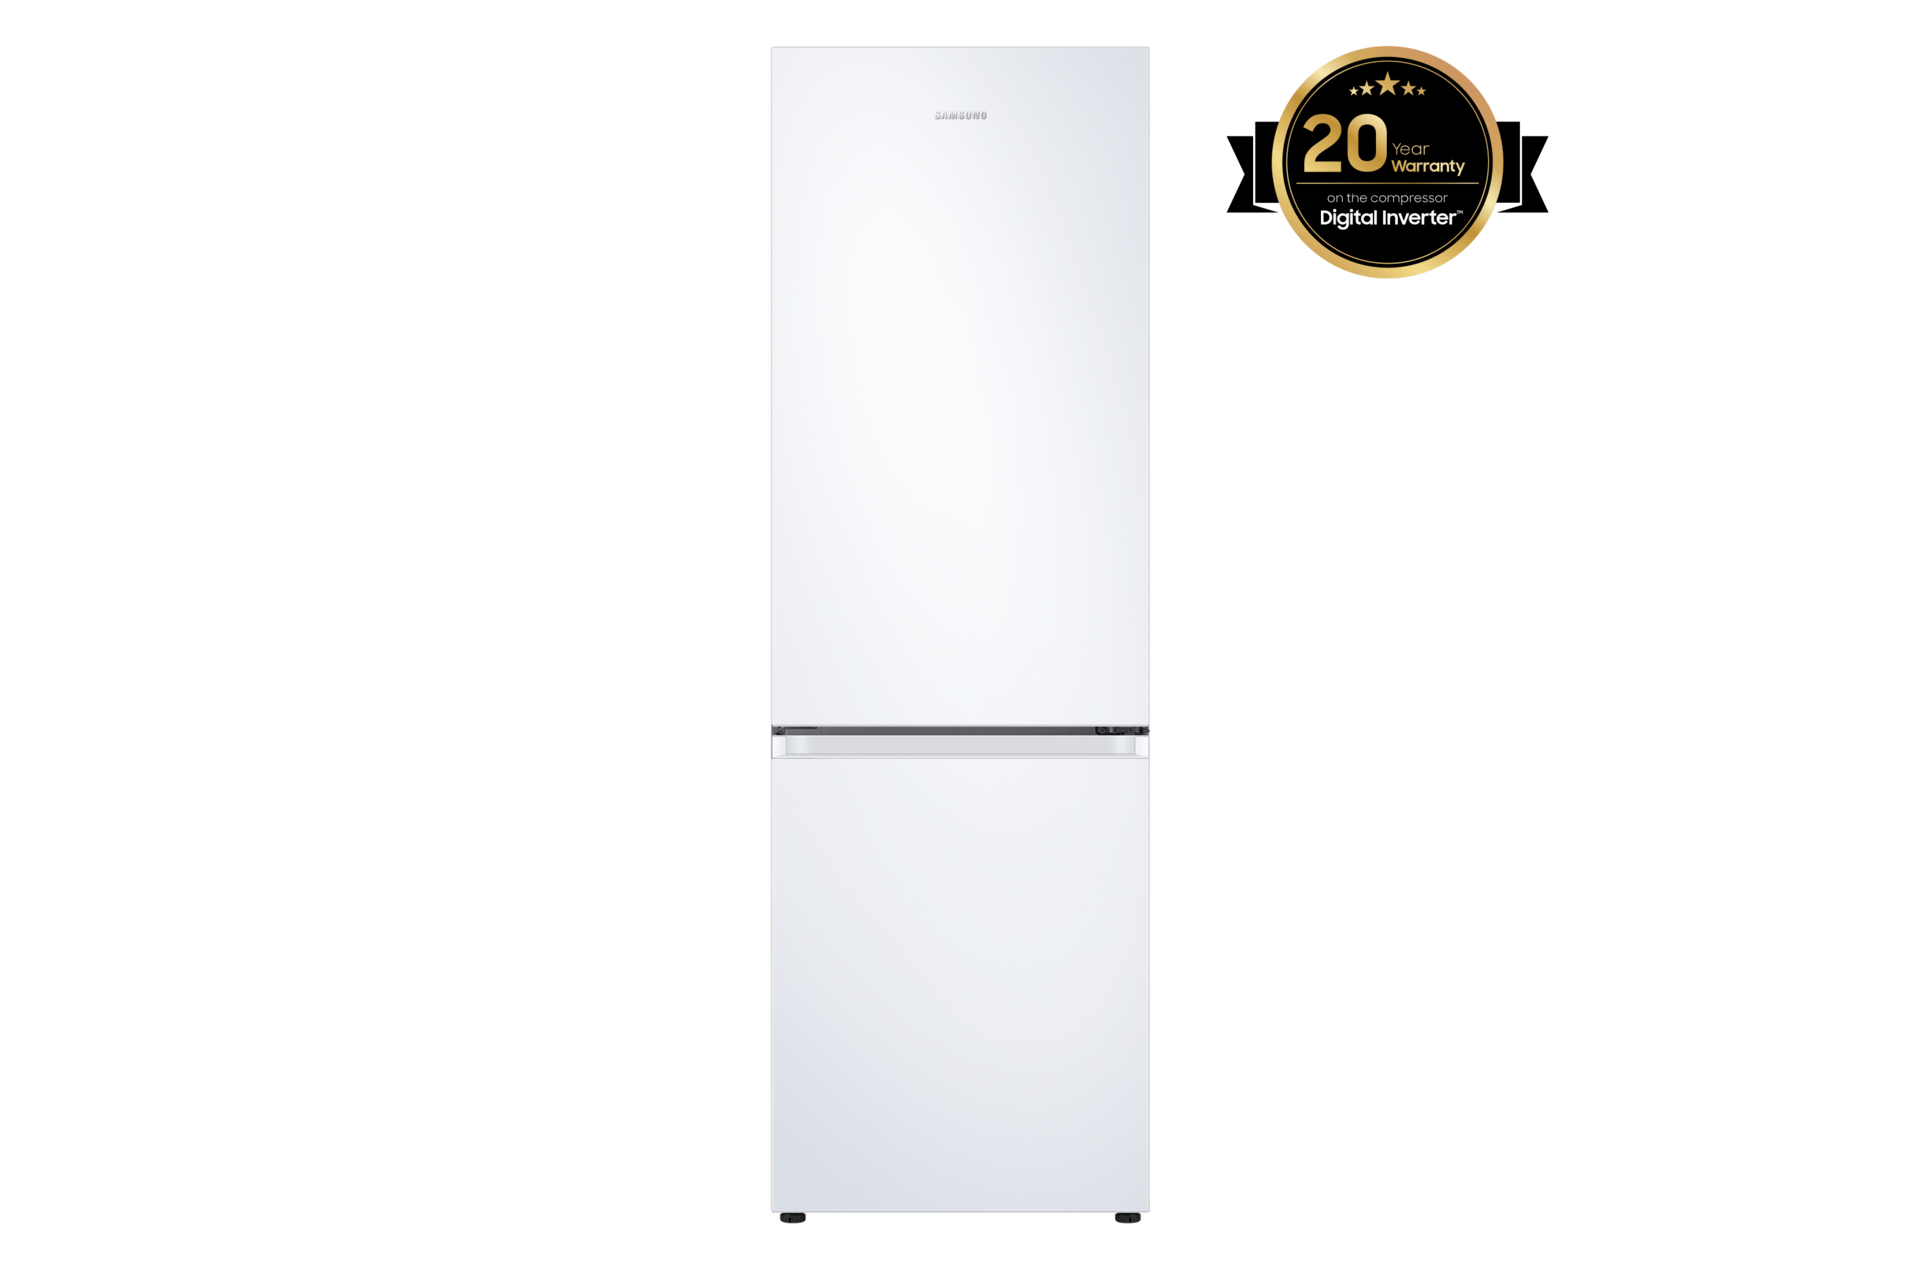 Samsung Réfrigérateur-congélateur RB7300 Bespoke, 387l, B, WiFi